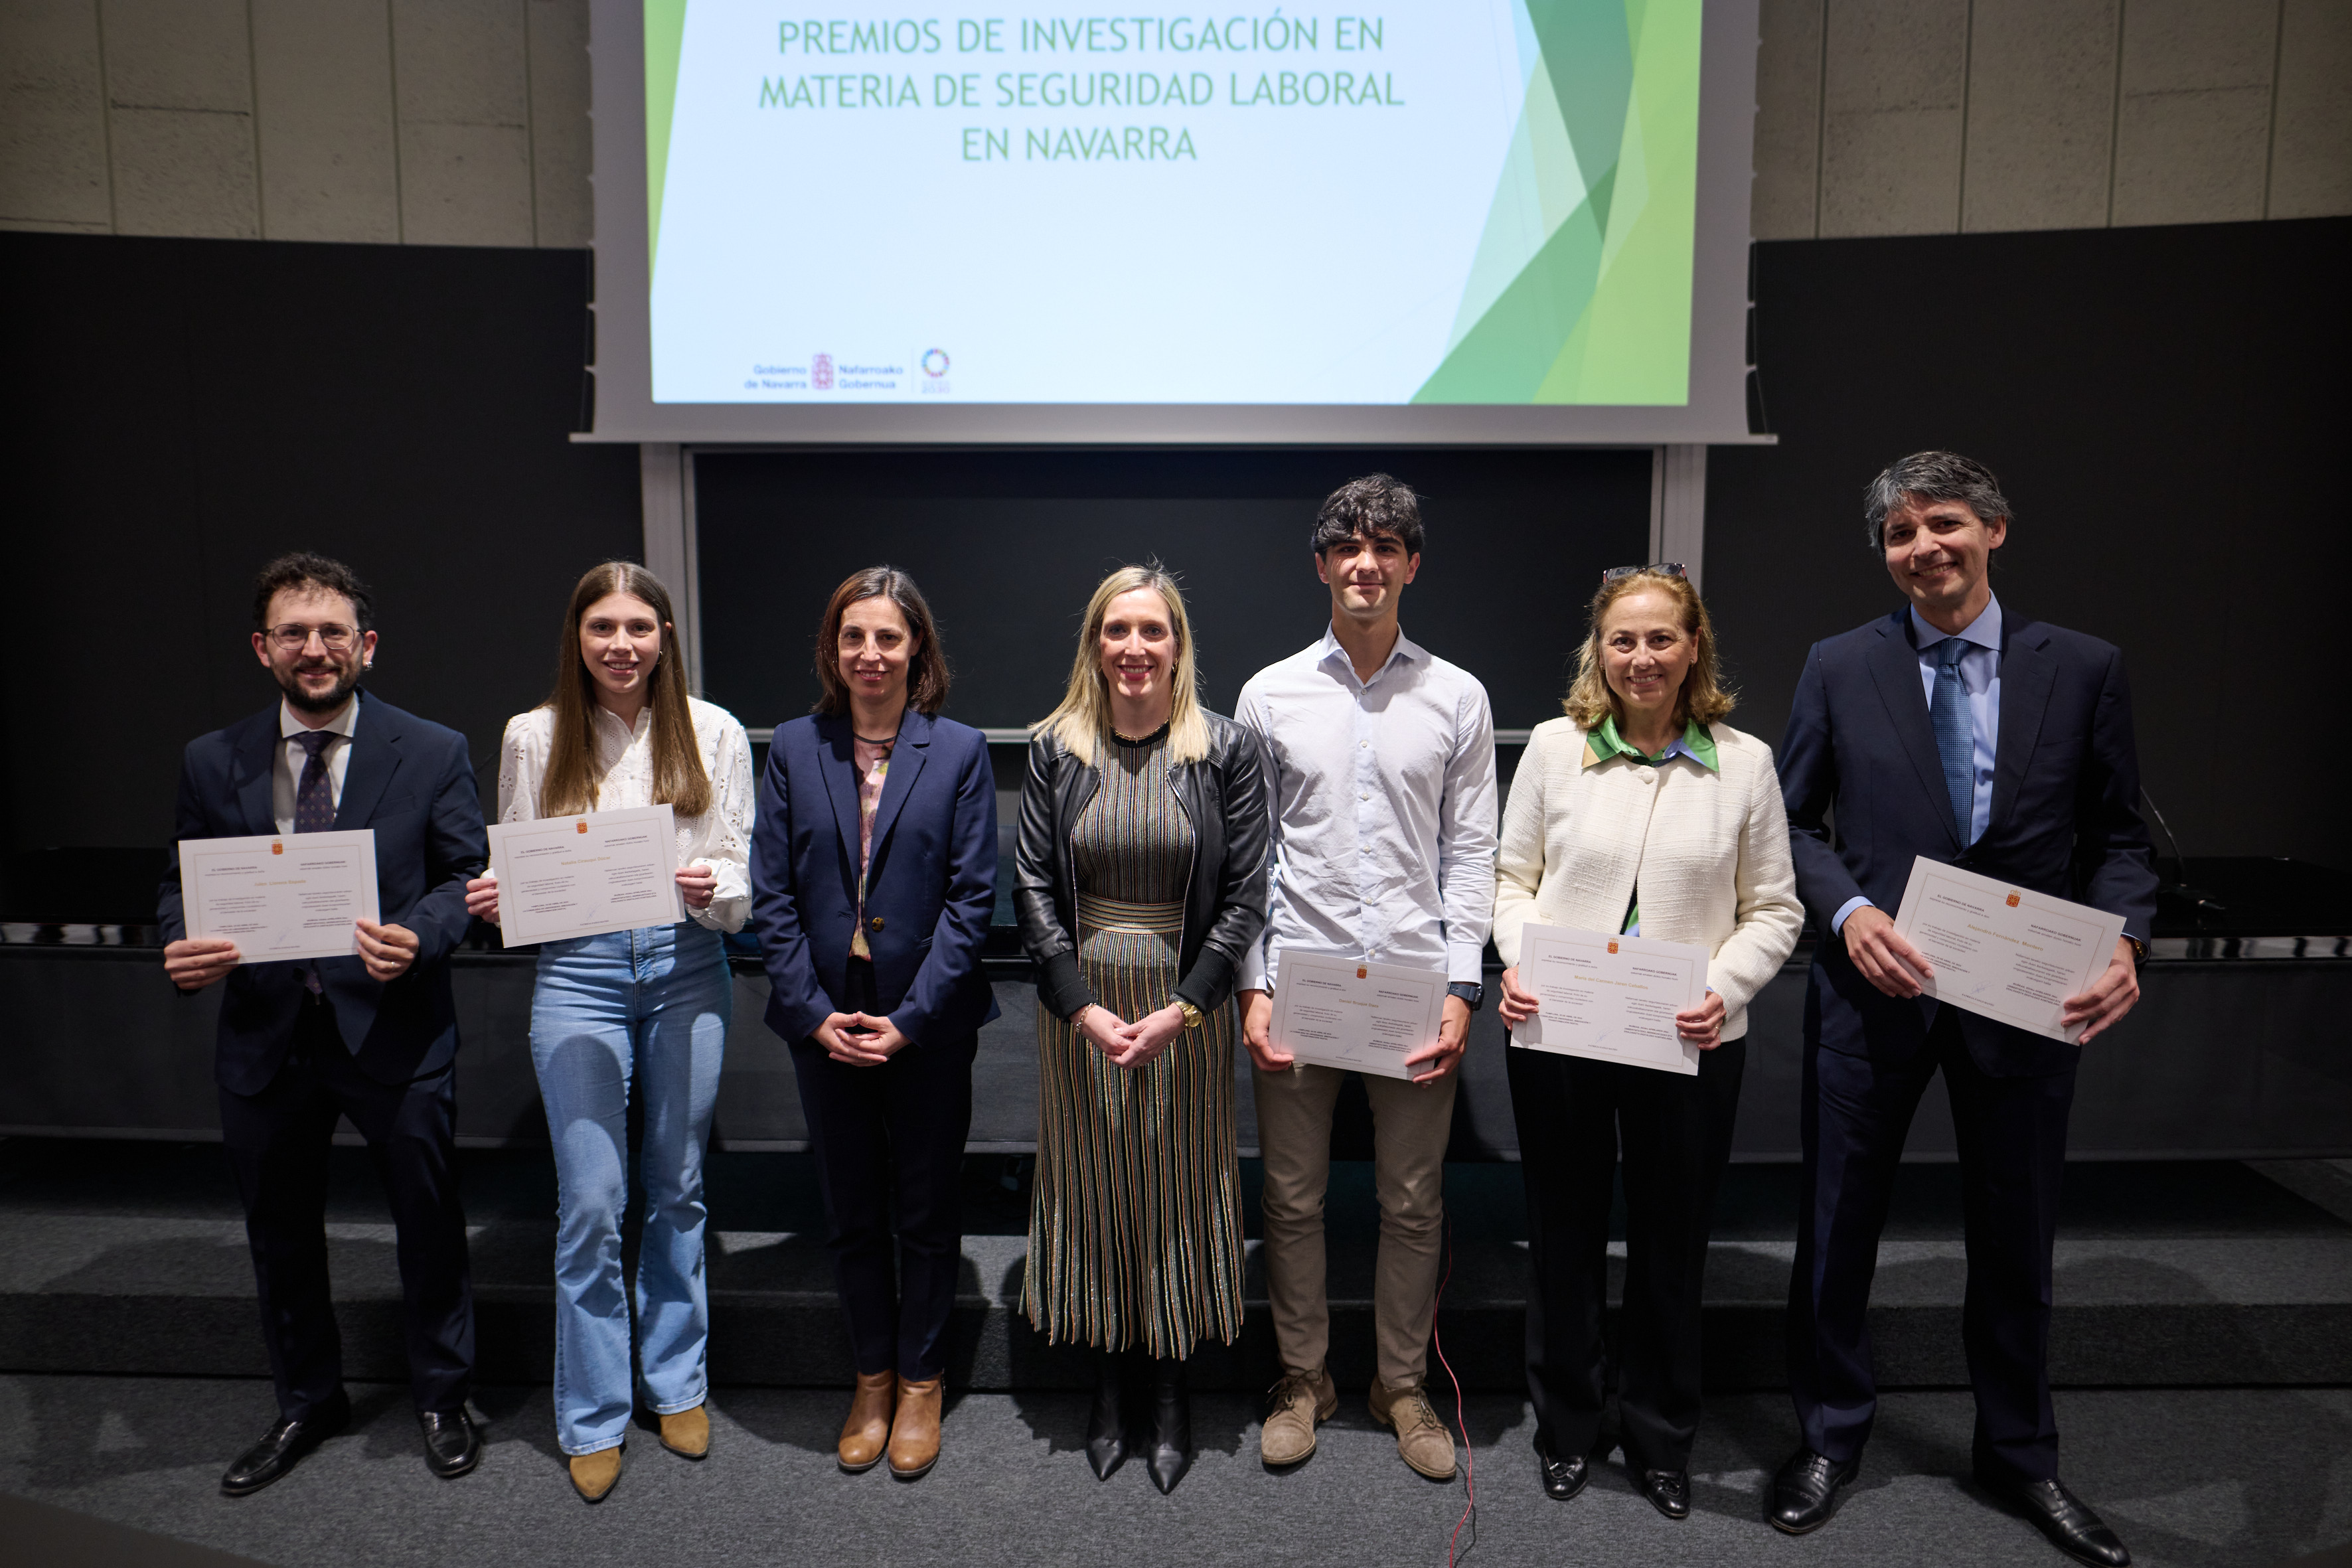 imagen 6 proyectos han sido distinguidos con los premios de investigación en materia de seguridad laboral en Navarra